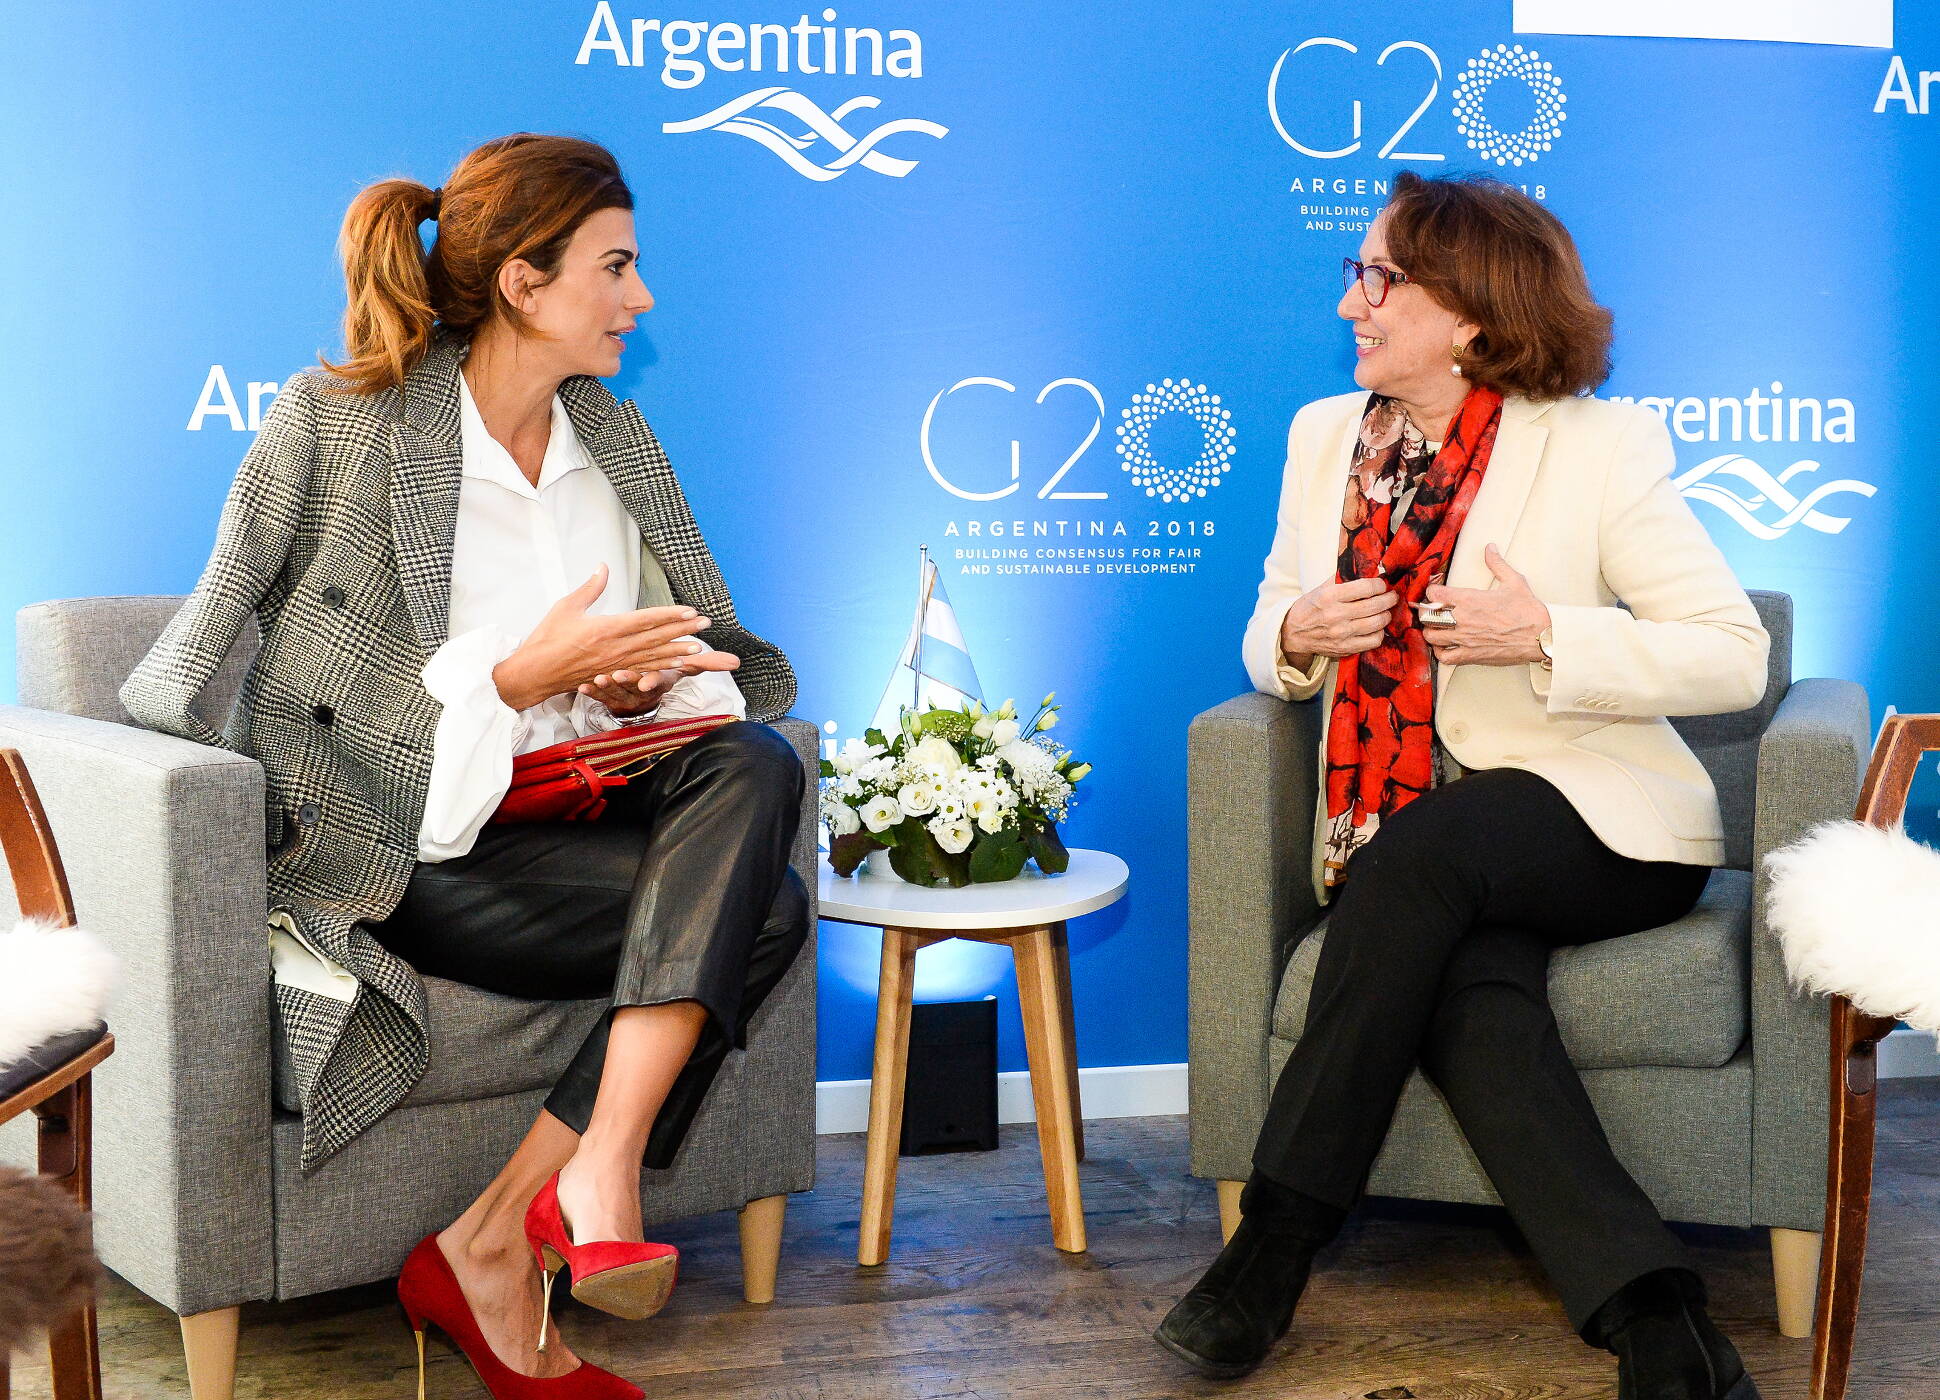 La agenda de Juliana Awada en Davos, con eje en el W20 y una convocatoria a participar en la cumbre de Argentina